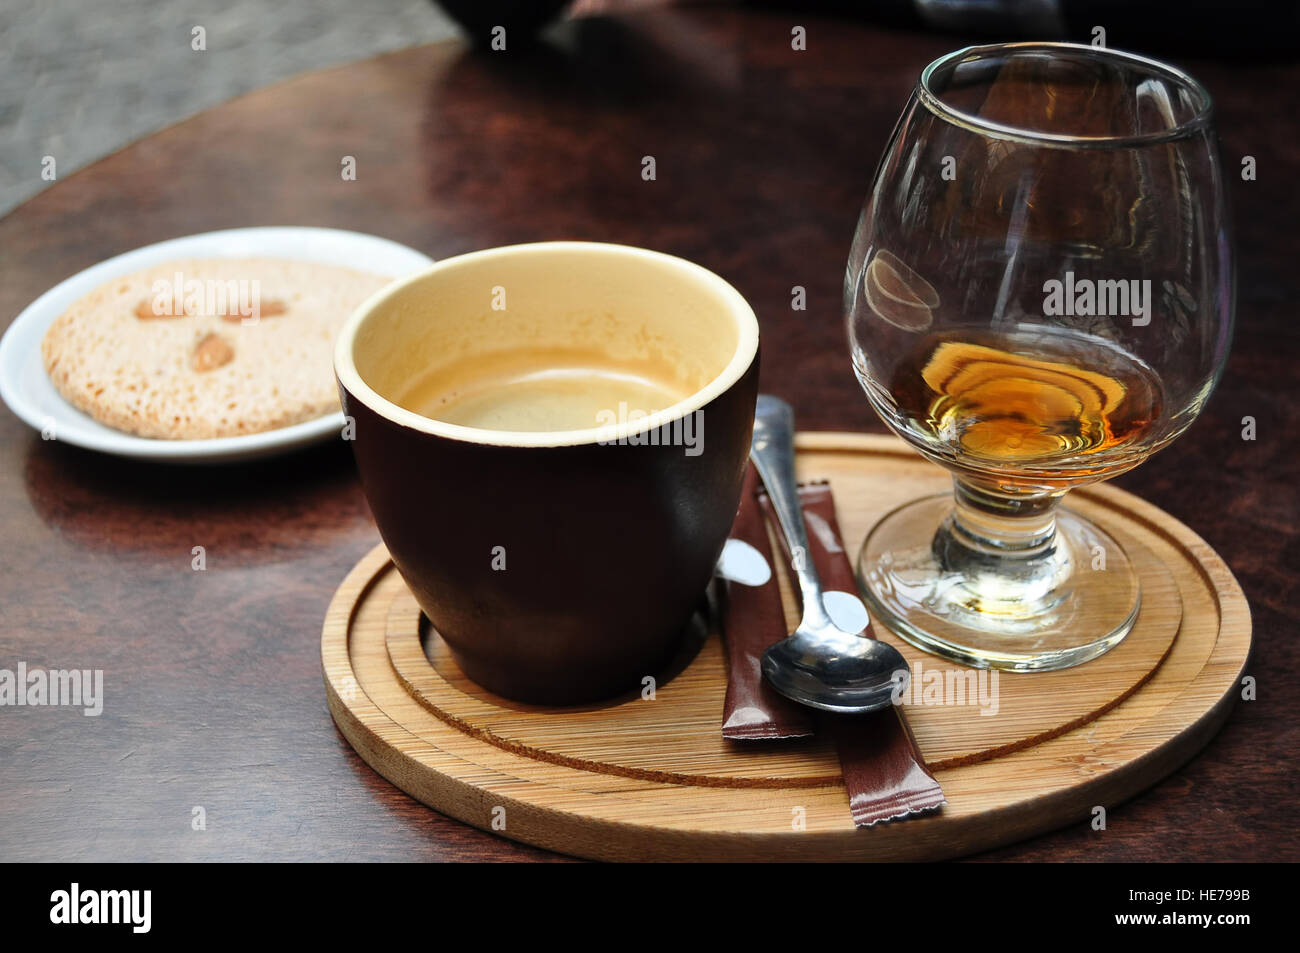 Dunkle Keramik Tasse Kaffee, Glas Cognac und italienischer Mandel-Cantuccini Cookie auf einem weißen Teller auf einem alten Holztisch im café Stockfoto